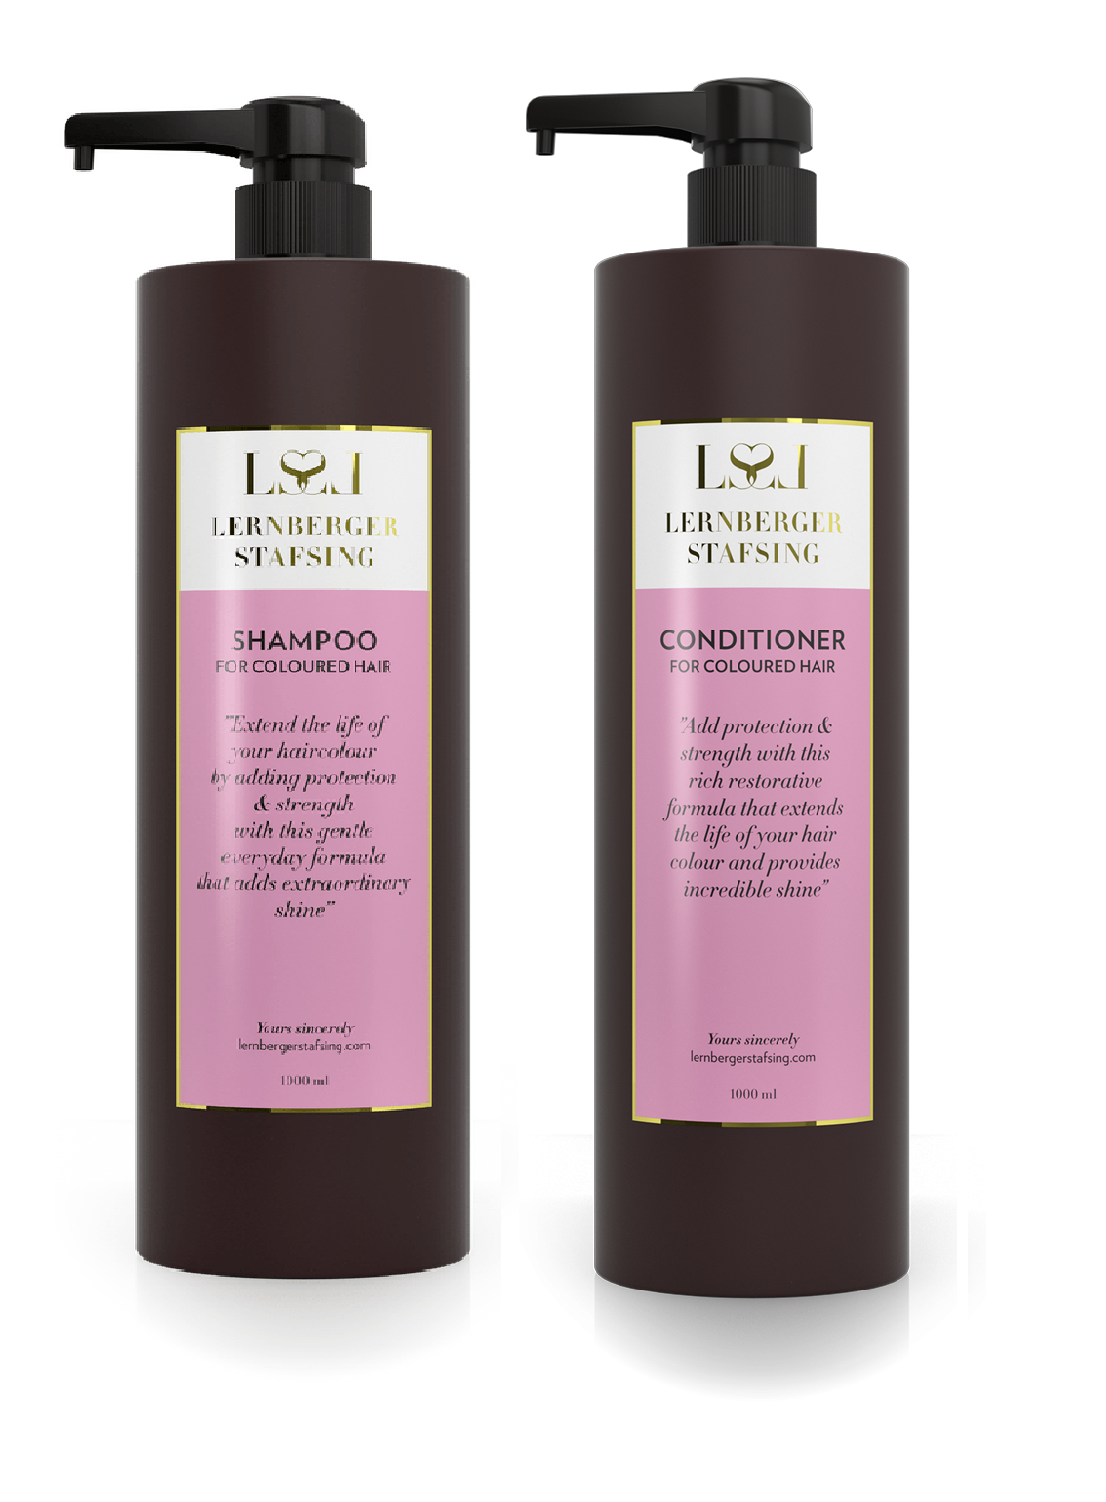 Køb Lernberger Stafsing - Shampoo For Hair 1000 ml + Lernberger Stafsing Conditioner For Coloured Hair 1000 ml - Fri fragt